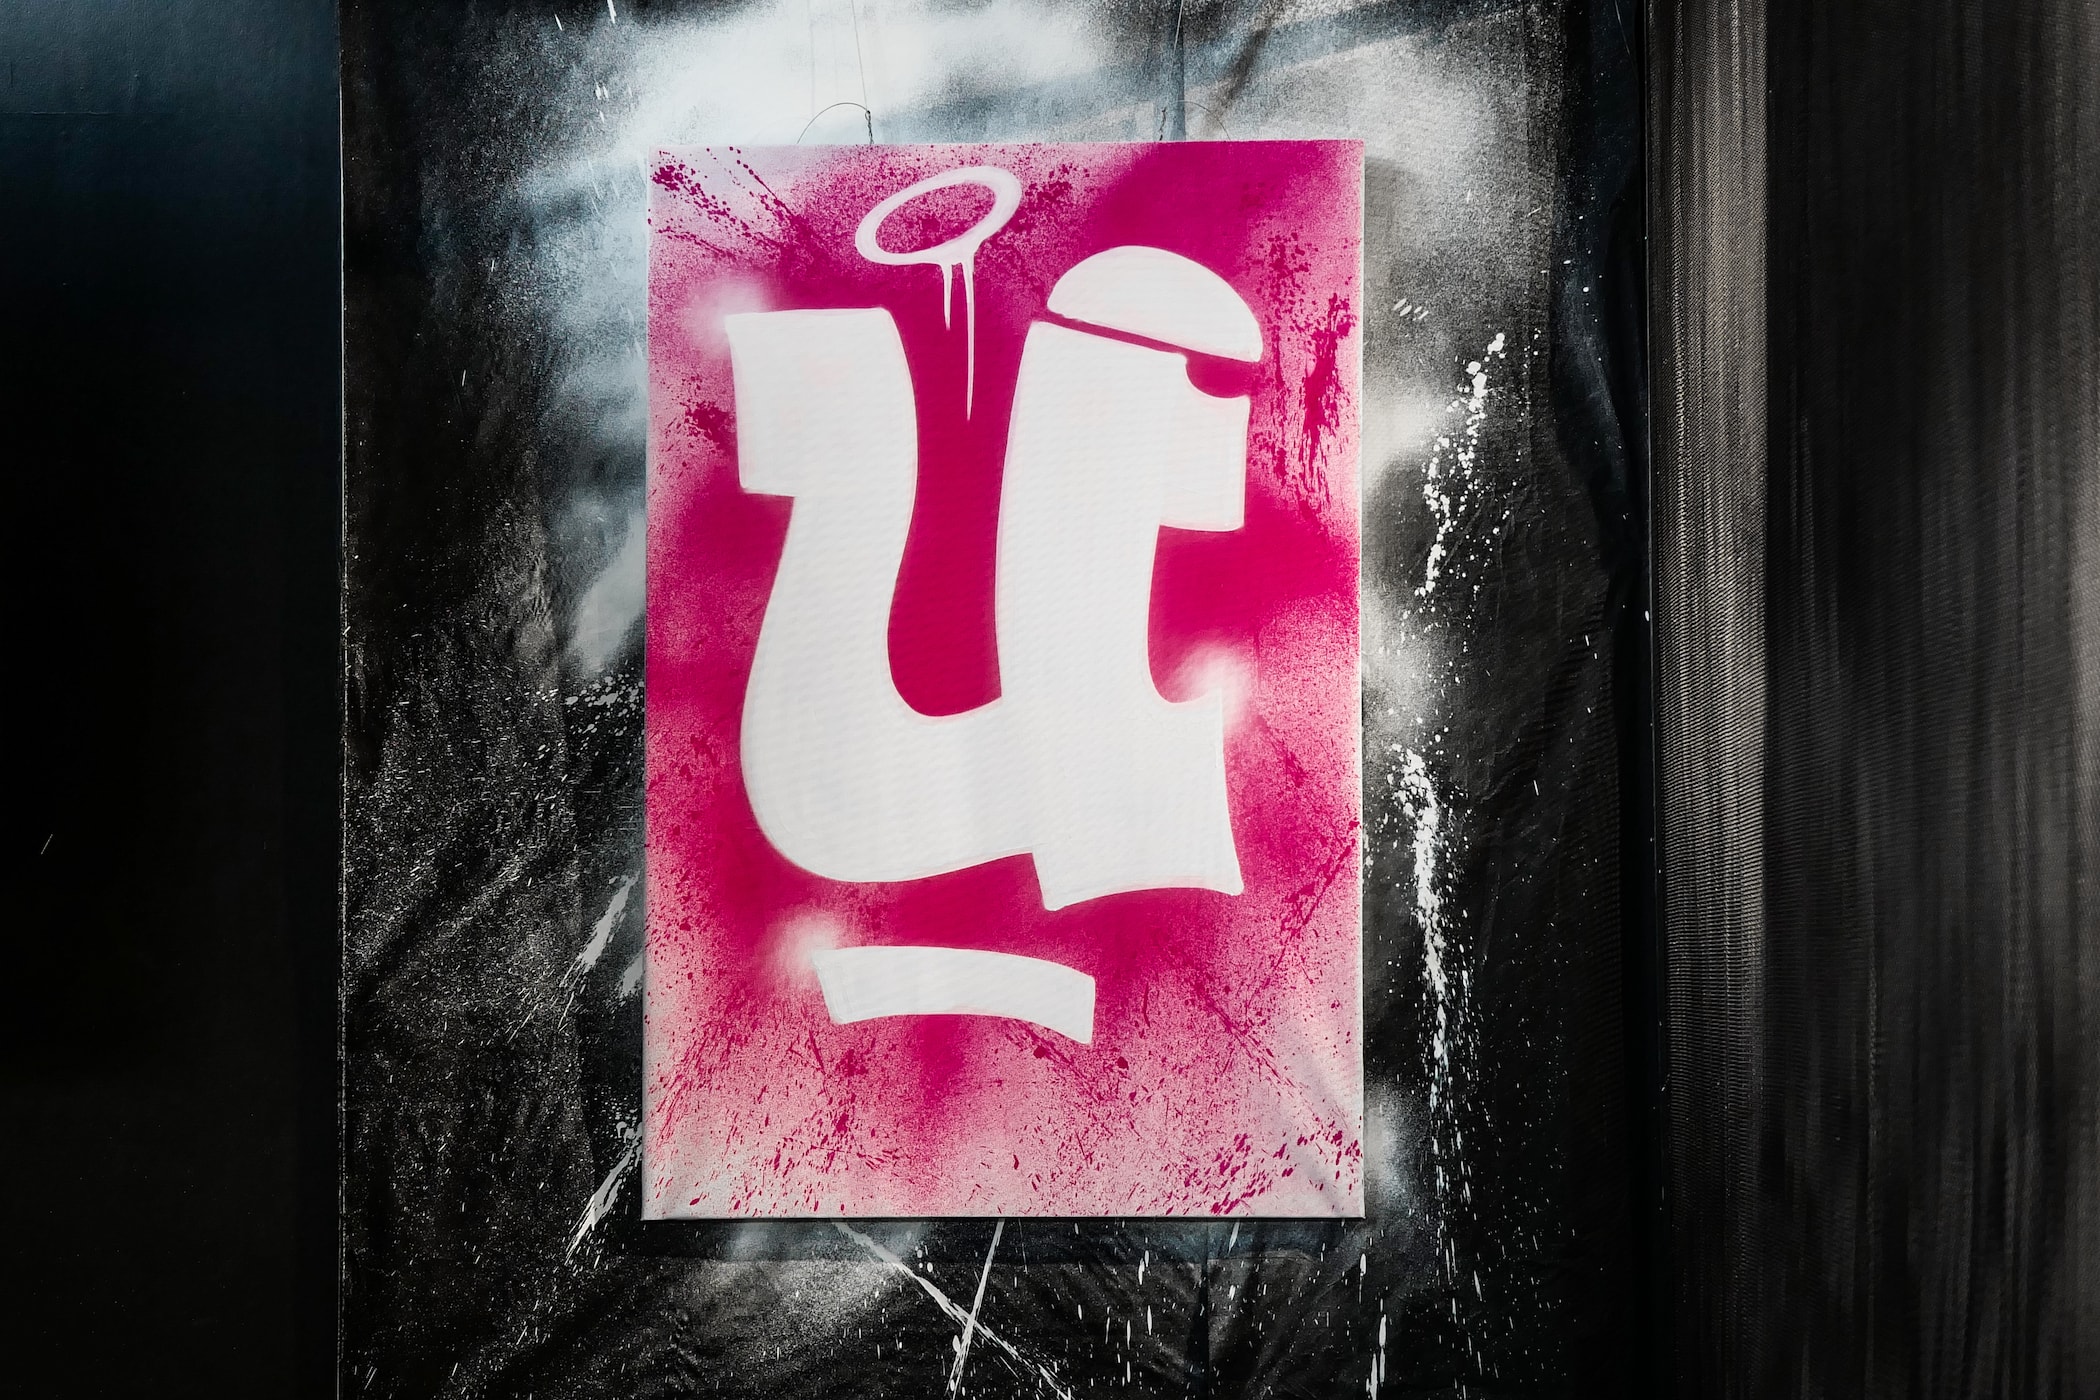 柏林塗鴉團隊 1UP 攜手創意視覺廠牌 MVM 打造主題展覽